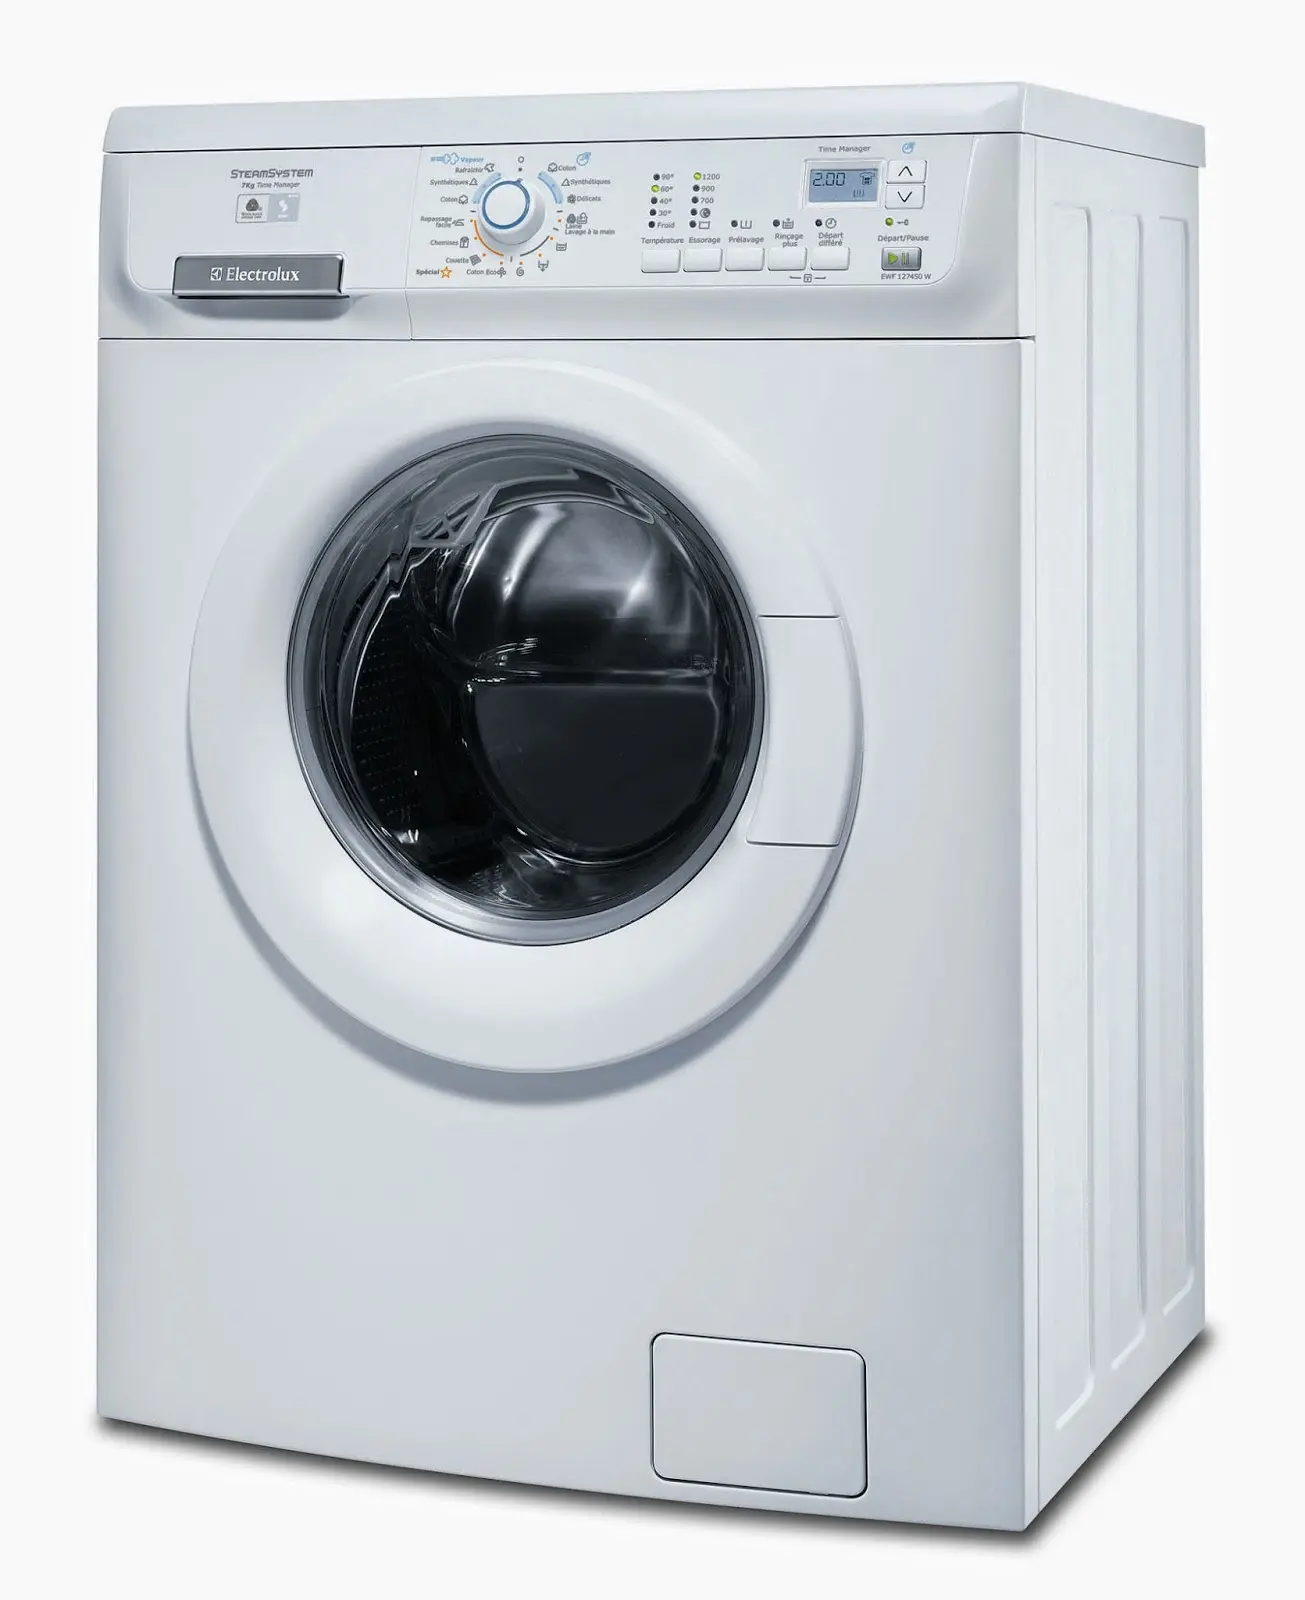 desventajas de la lavadora - Qué desventaja tiene la lavadora